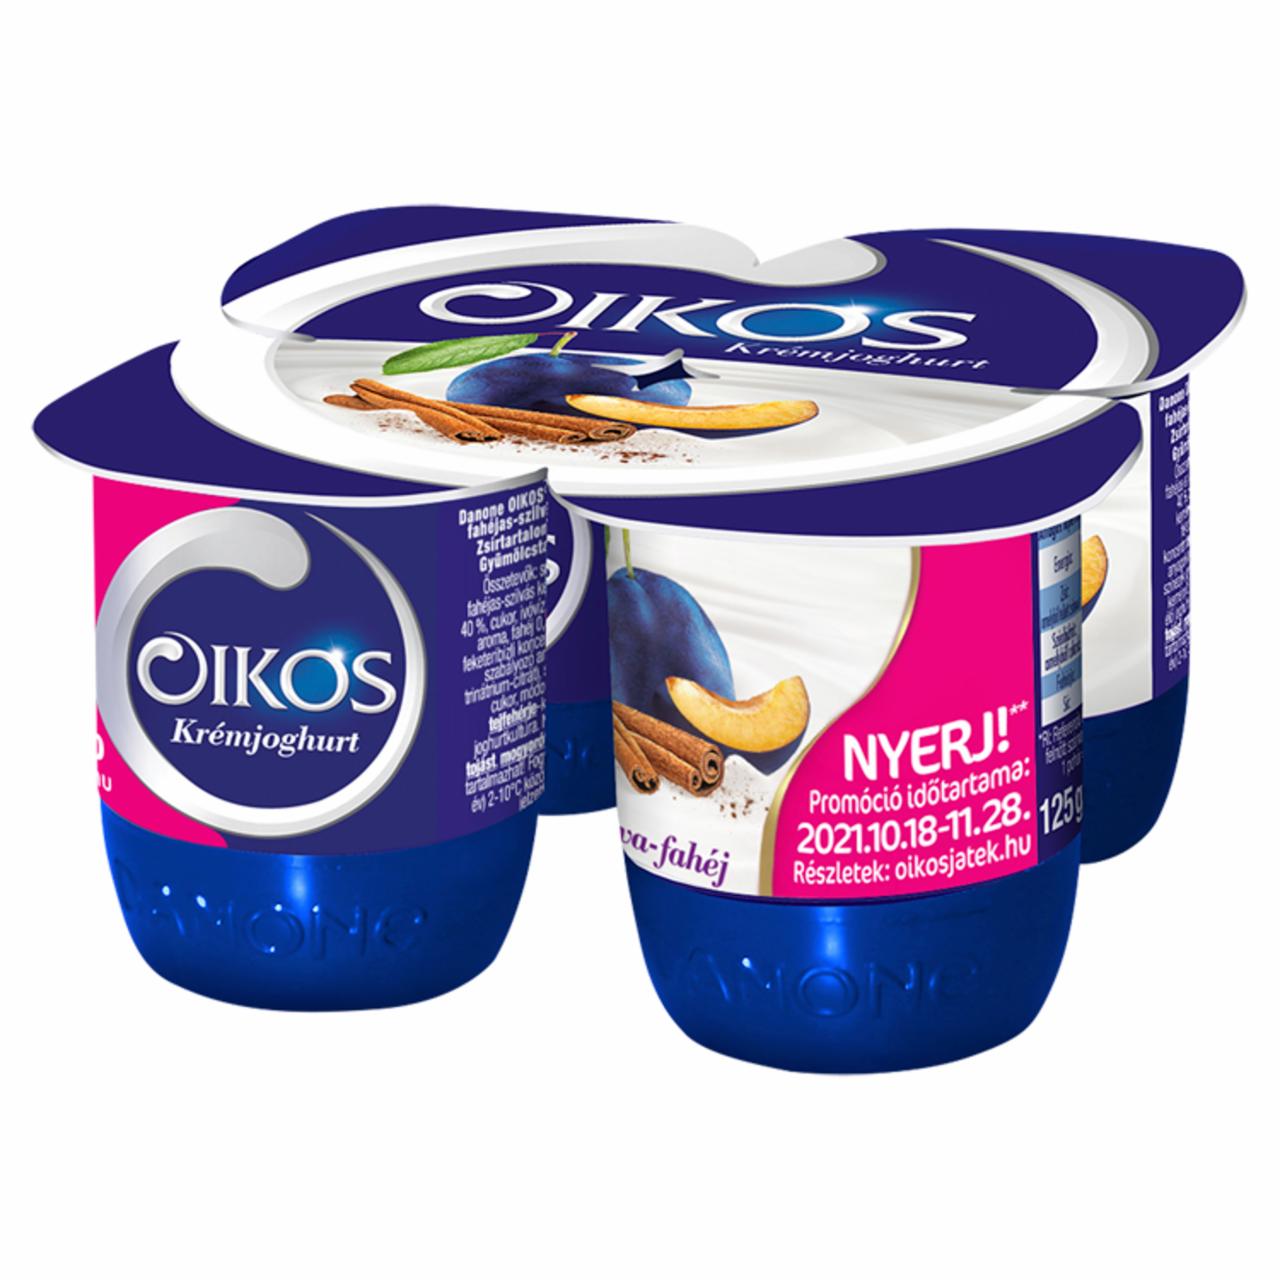 Képek - Danone Oikos Görög élőflórás szilvás-fahéjas krémjoghurt 4 x 125 g